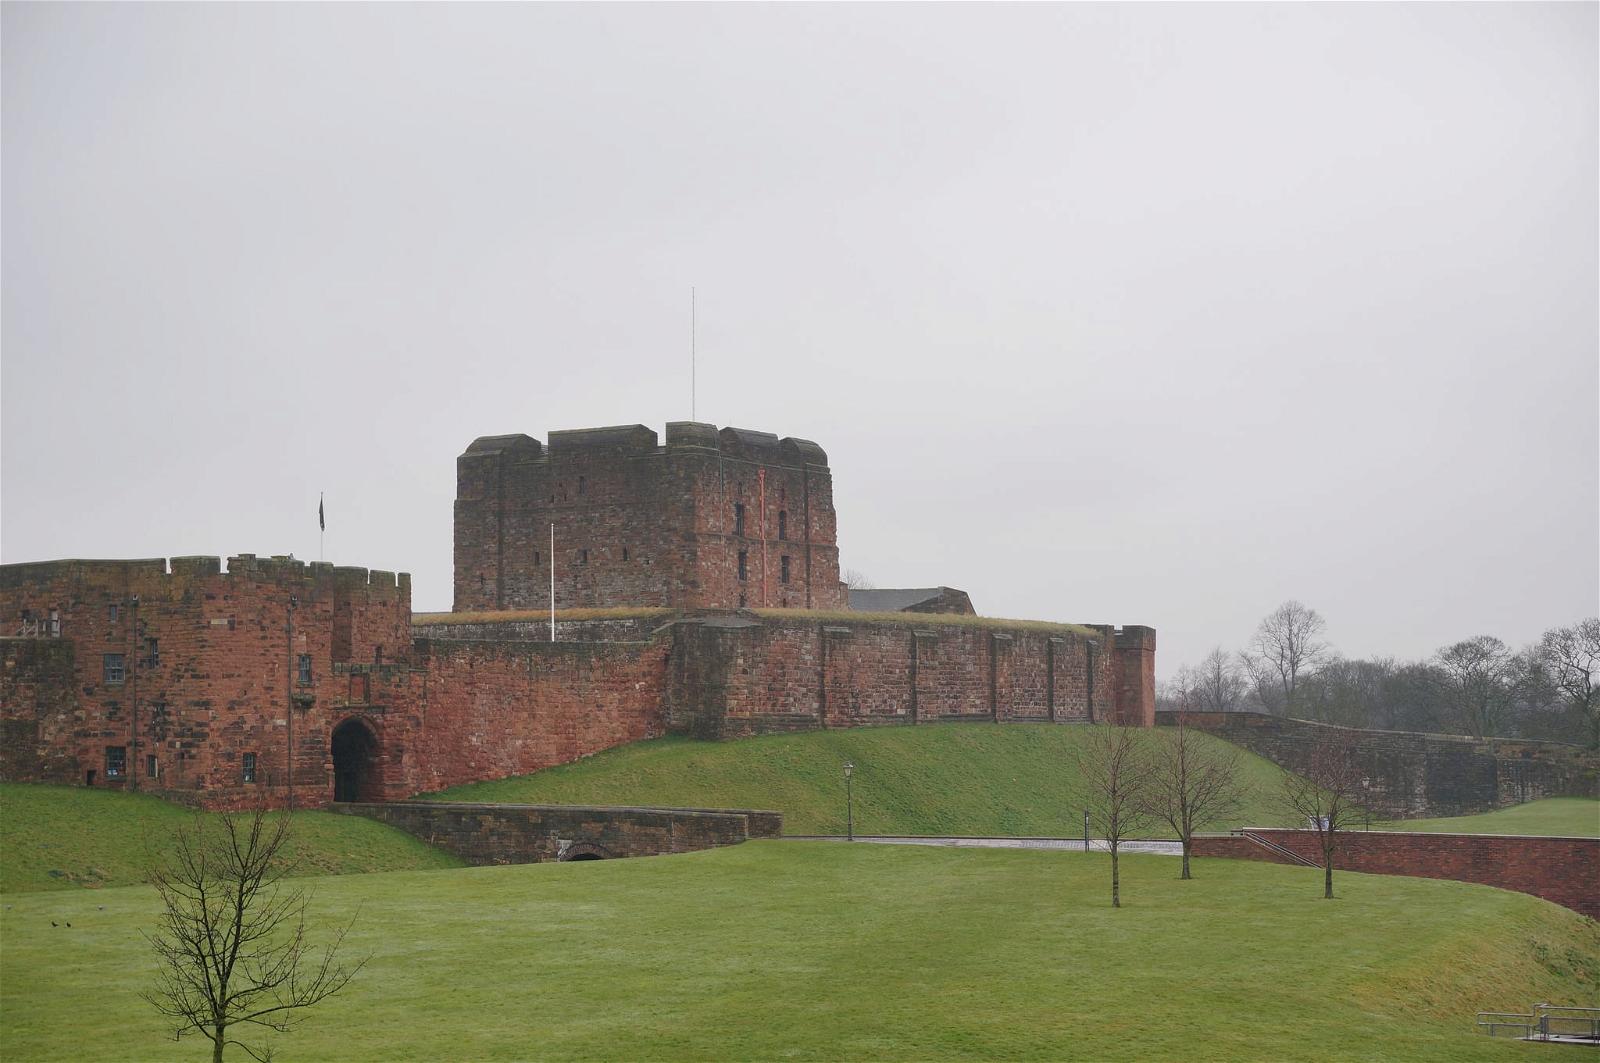 Imagem de Carlisle Castle. castle carlisle file:md5sum=908c8bc5047d86c9d51cb7e162e7d1b4 file:sha1sig=beb354c67860ebbfa863e4076d045cbb567bb0f4